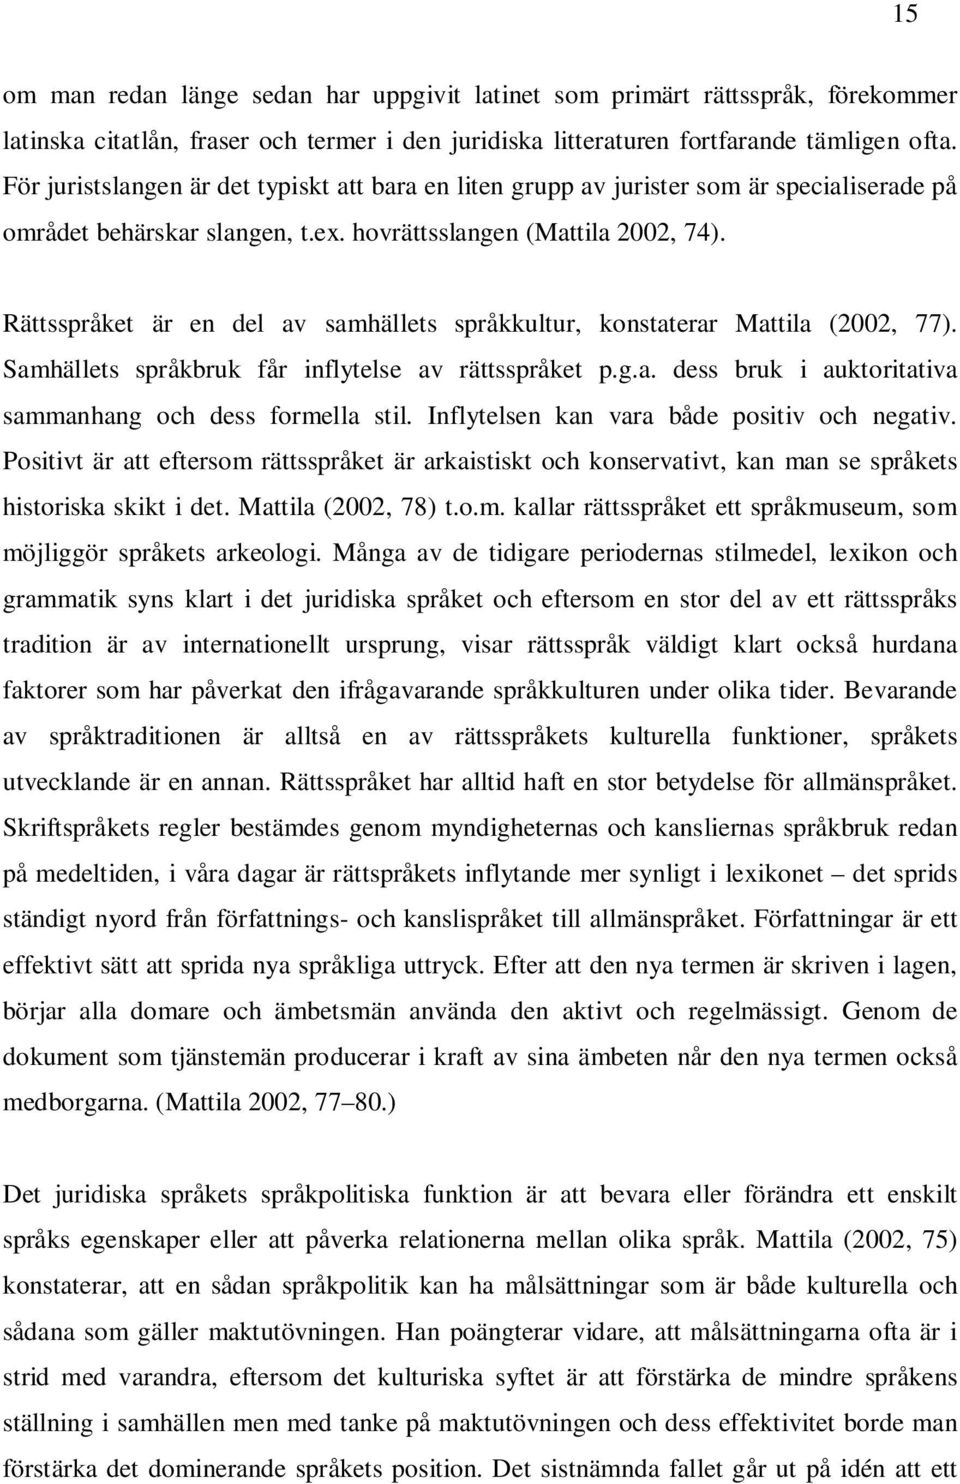 Rättsspråket är en del av samhällets språkkultur, konstaterar Mattila (2002, 77). Samhällets språkbruk får inflytelse av rättsspråket p.g.a. dess bruk i auktoritativa sammanhang och dess formella stil.